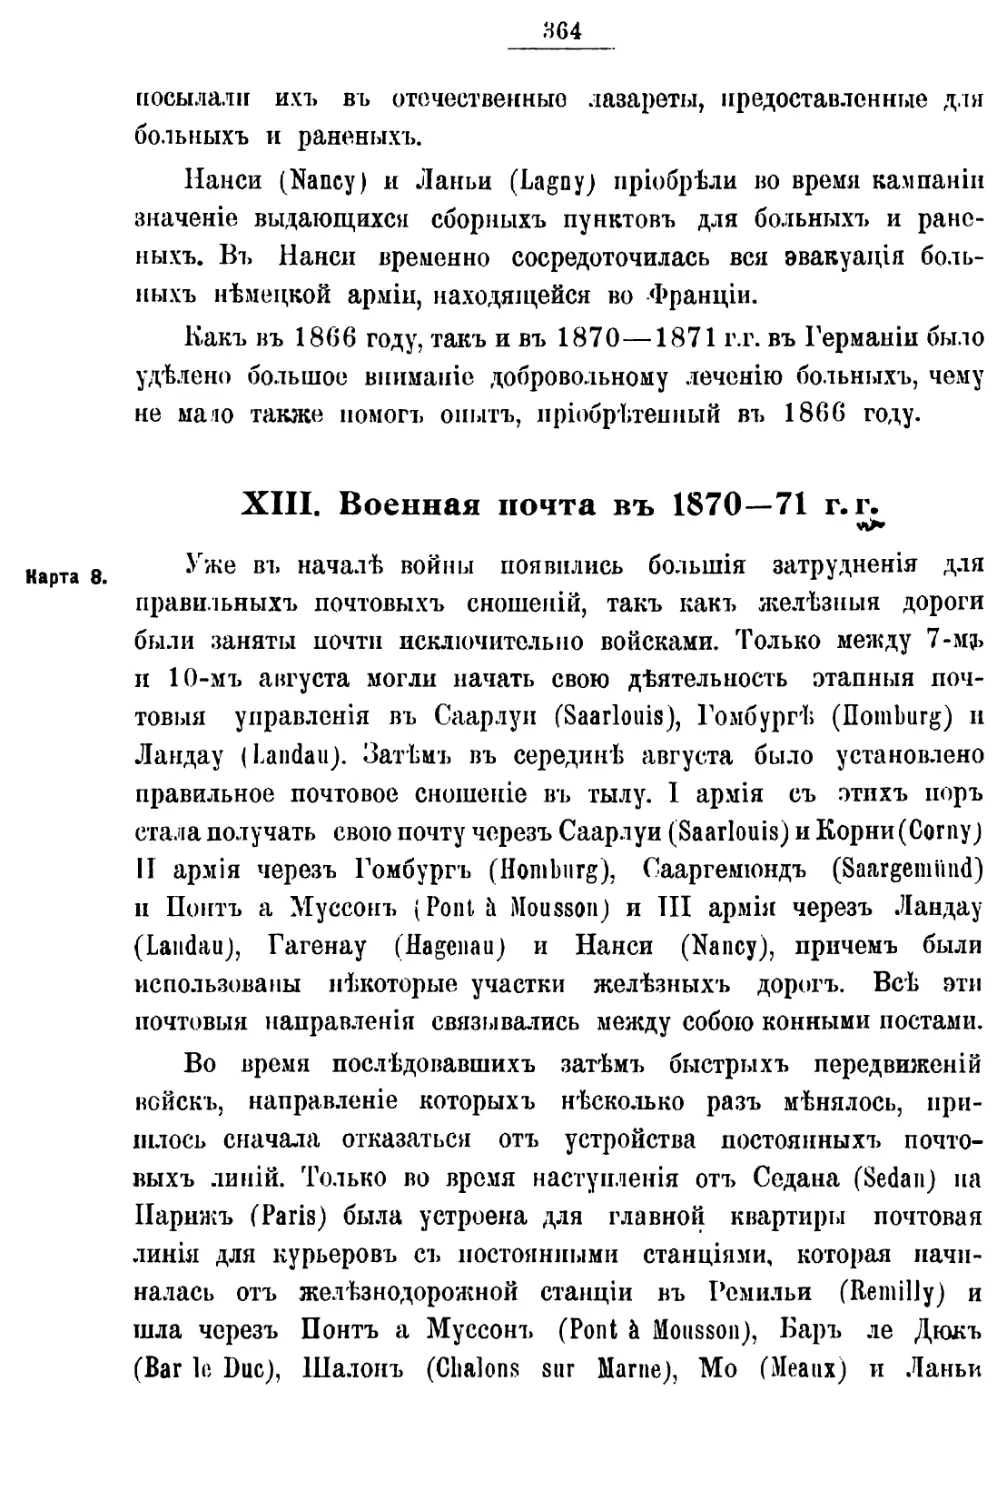 XIII. ПОЛЕВАЯ ПОЧТА В 1870-71 ГГ.